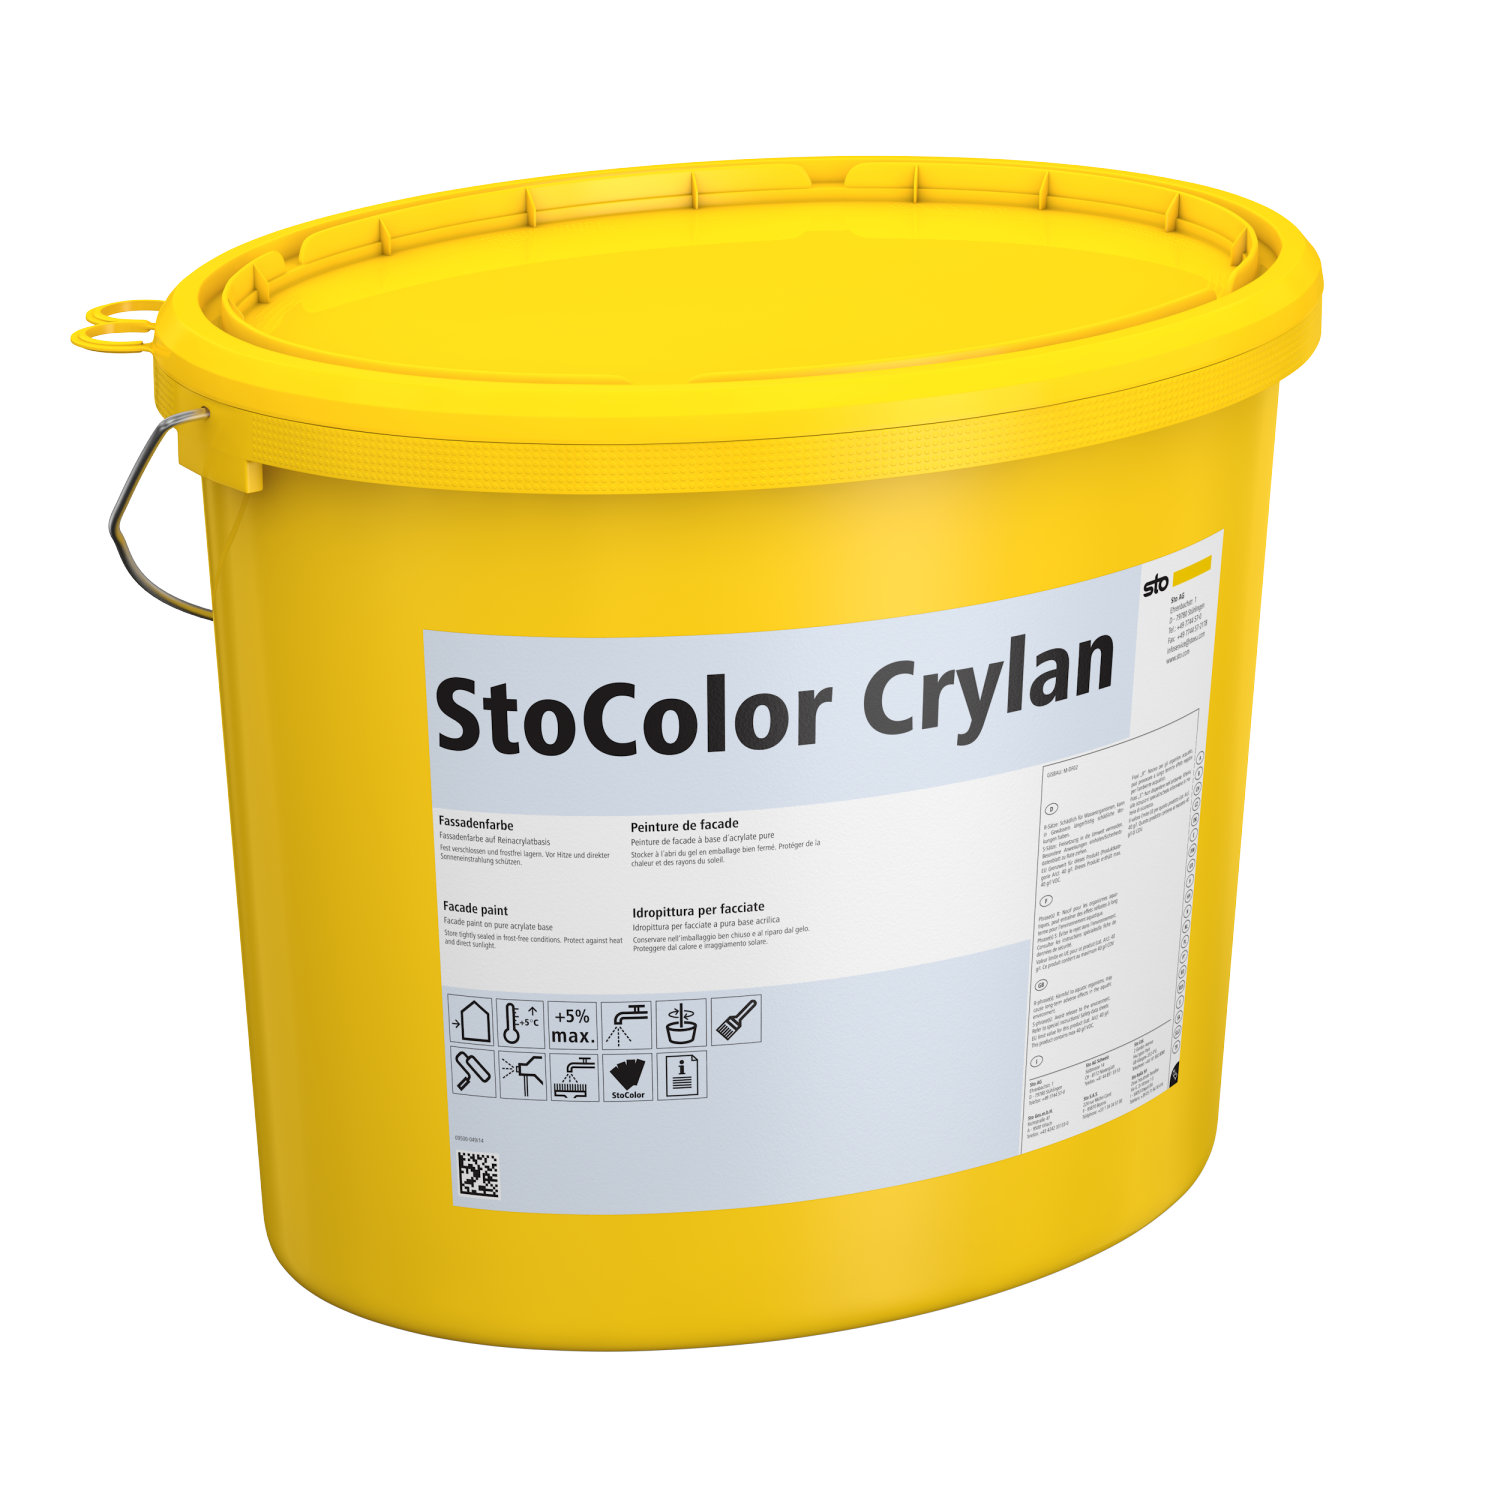 StoColorCrylan-1.jpeg